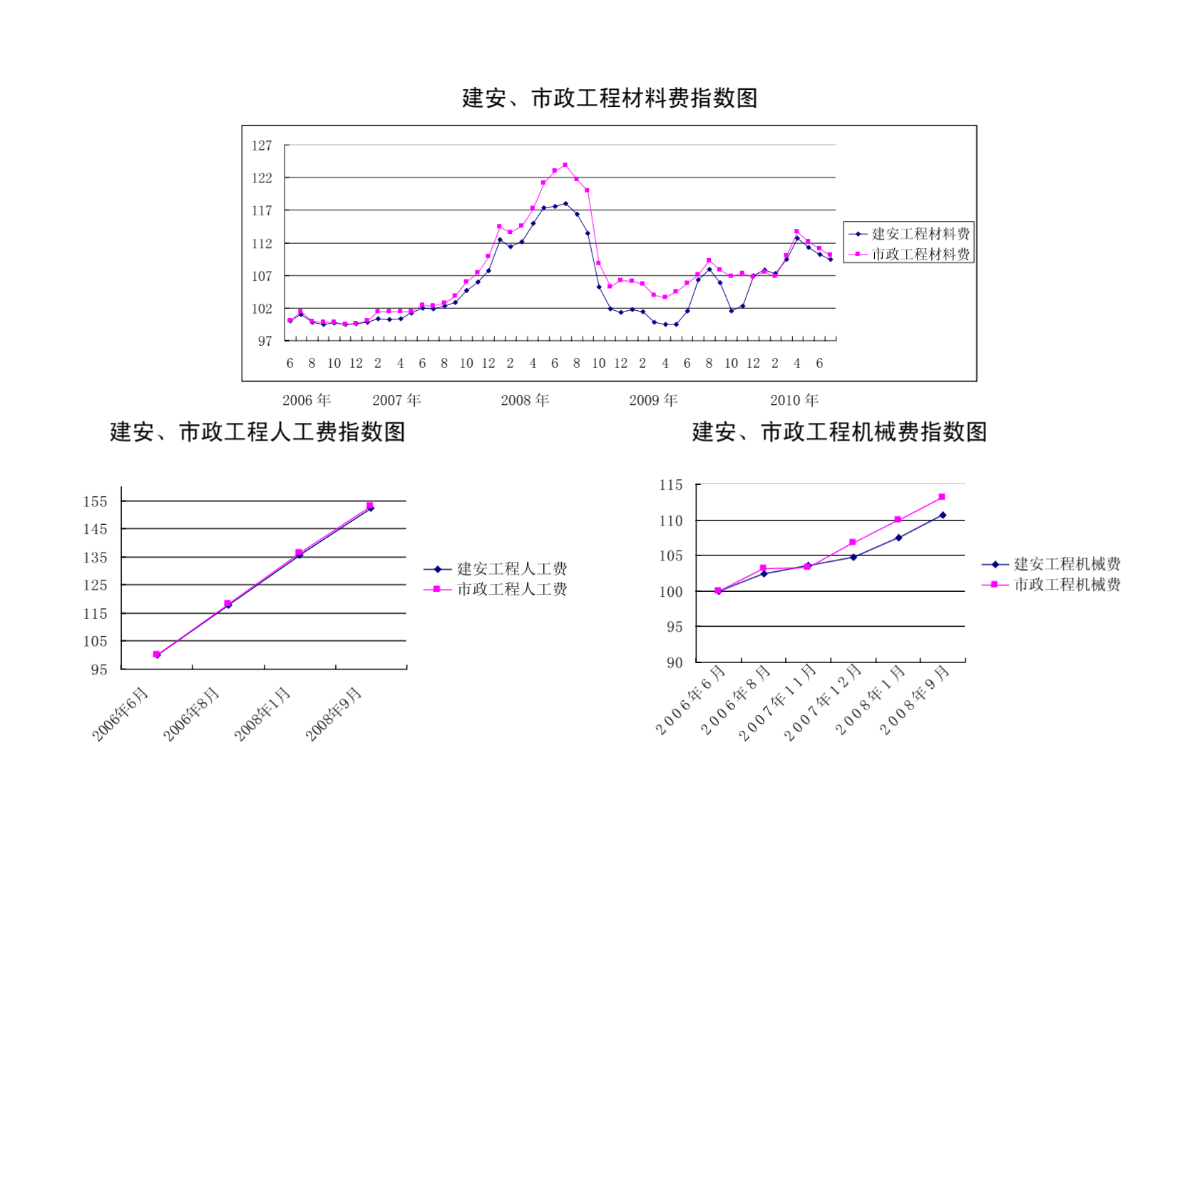 深圳市建设工程造价指标变化情况分析-图一